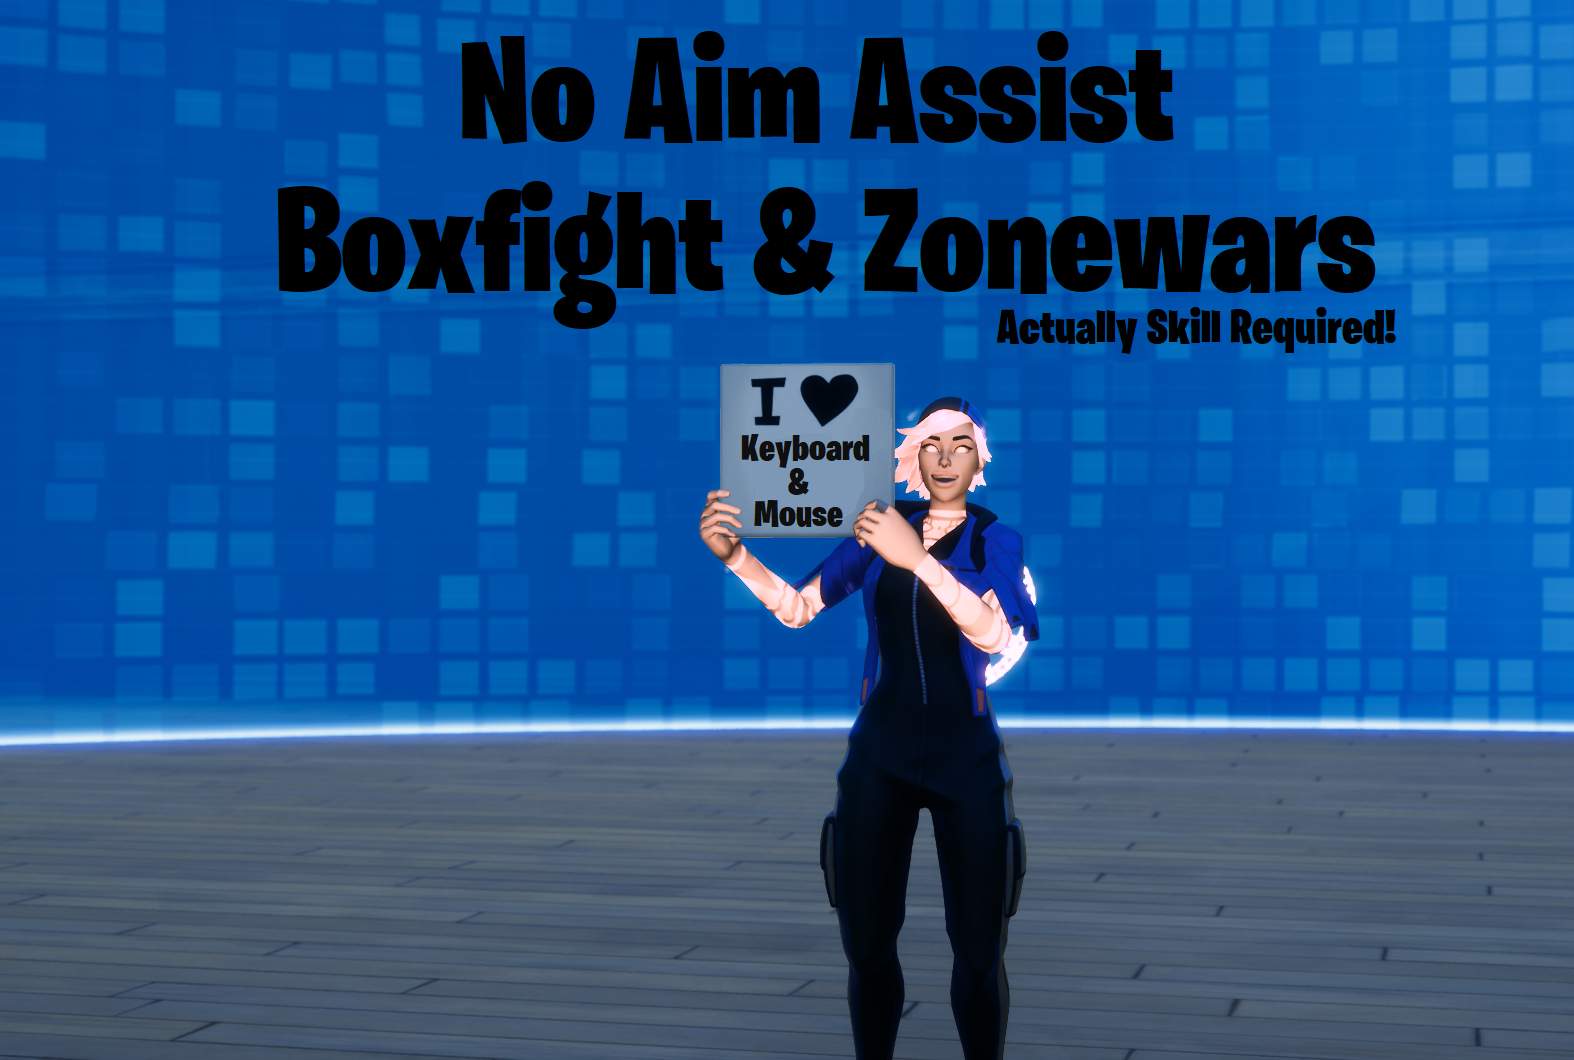 FFA - NO AIM ASSIST BOXFIGHT & ZONEWAR